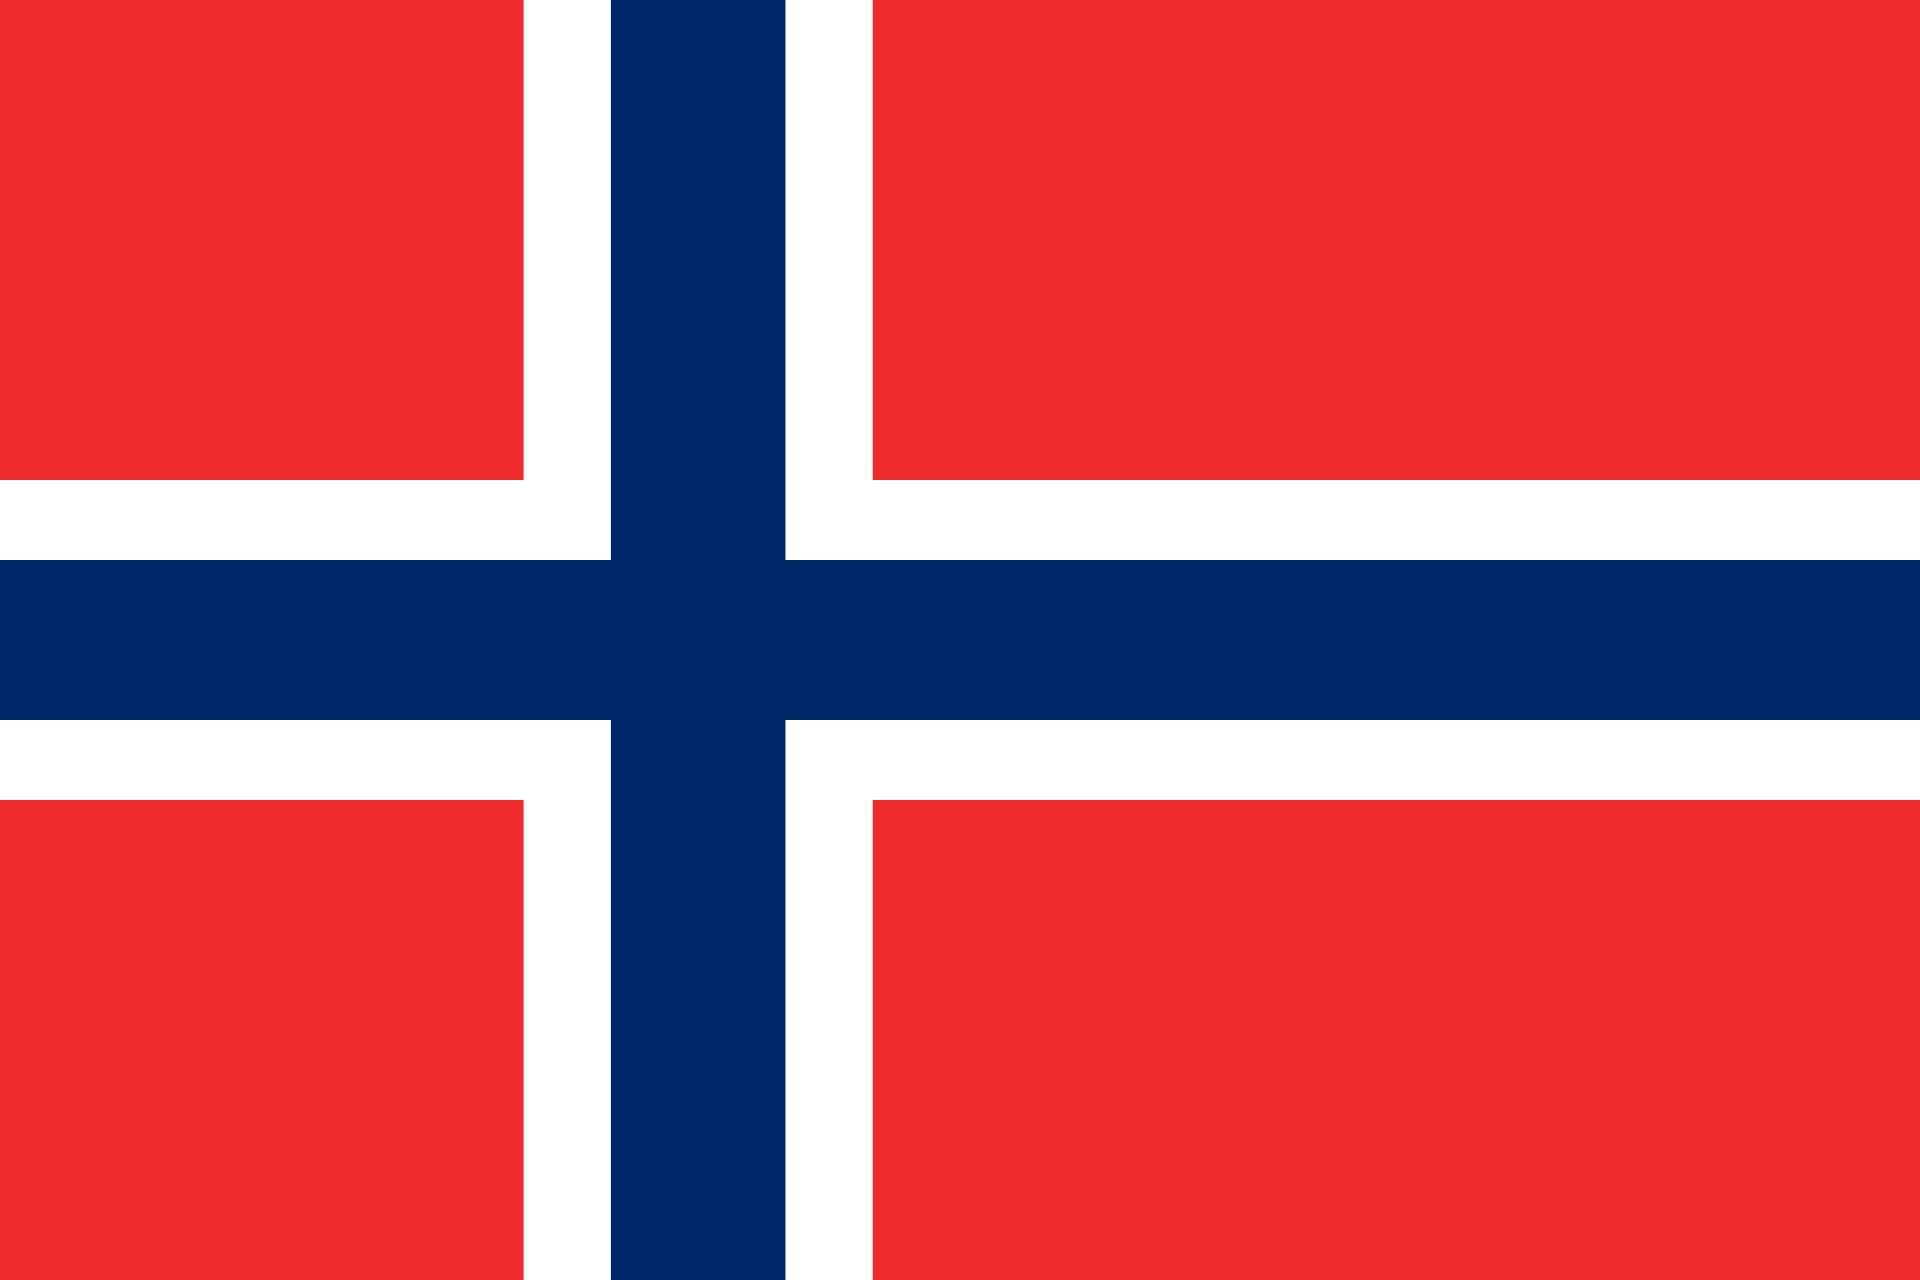 Norge kryptovaluta